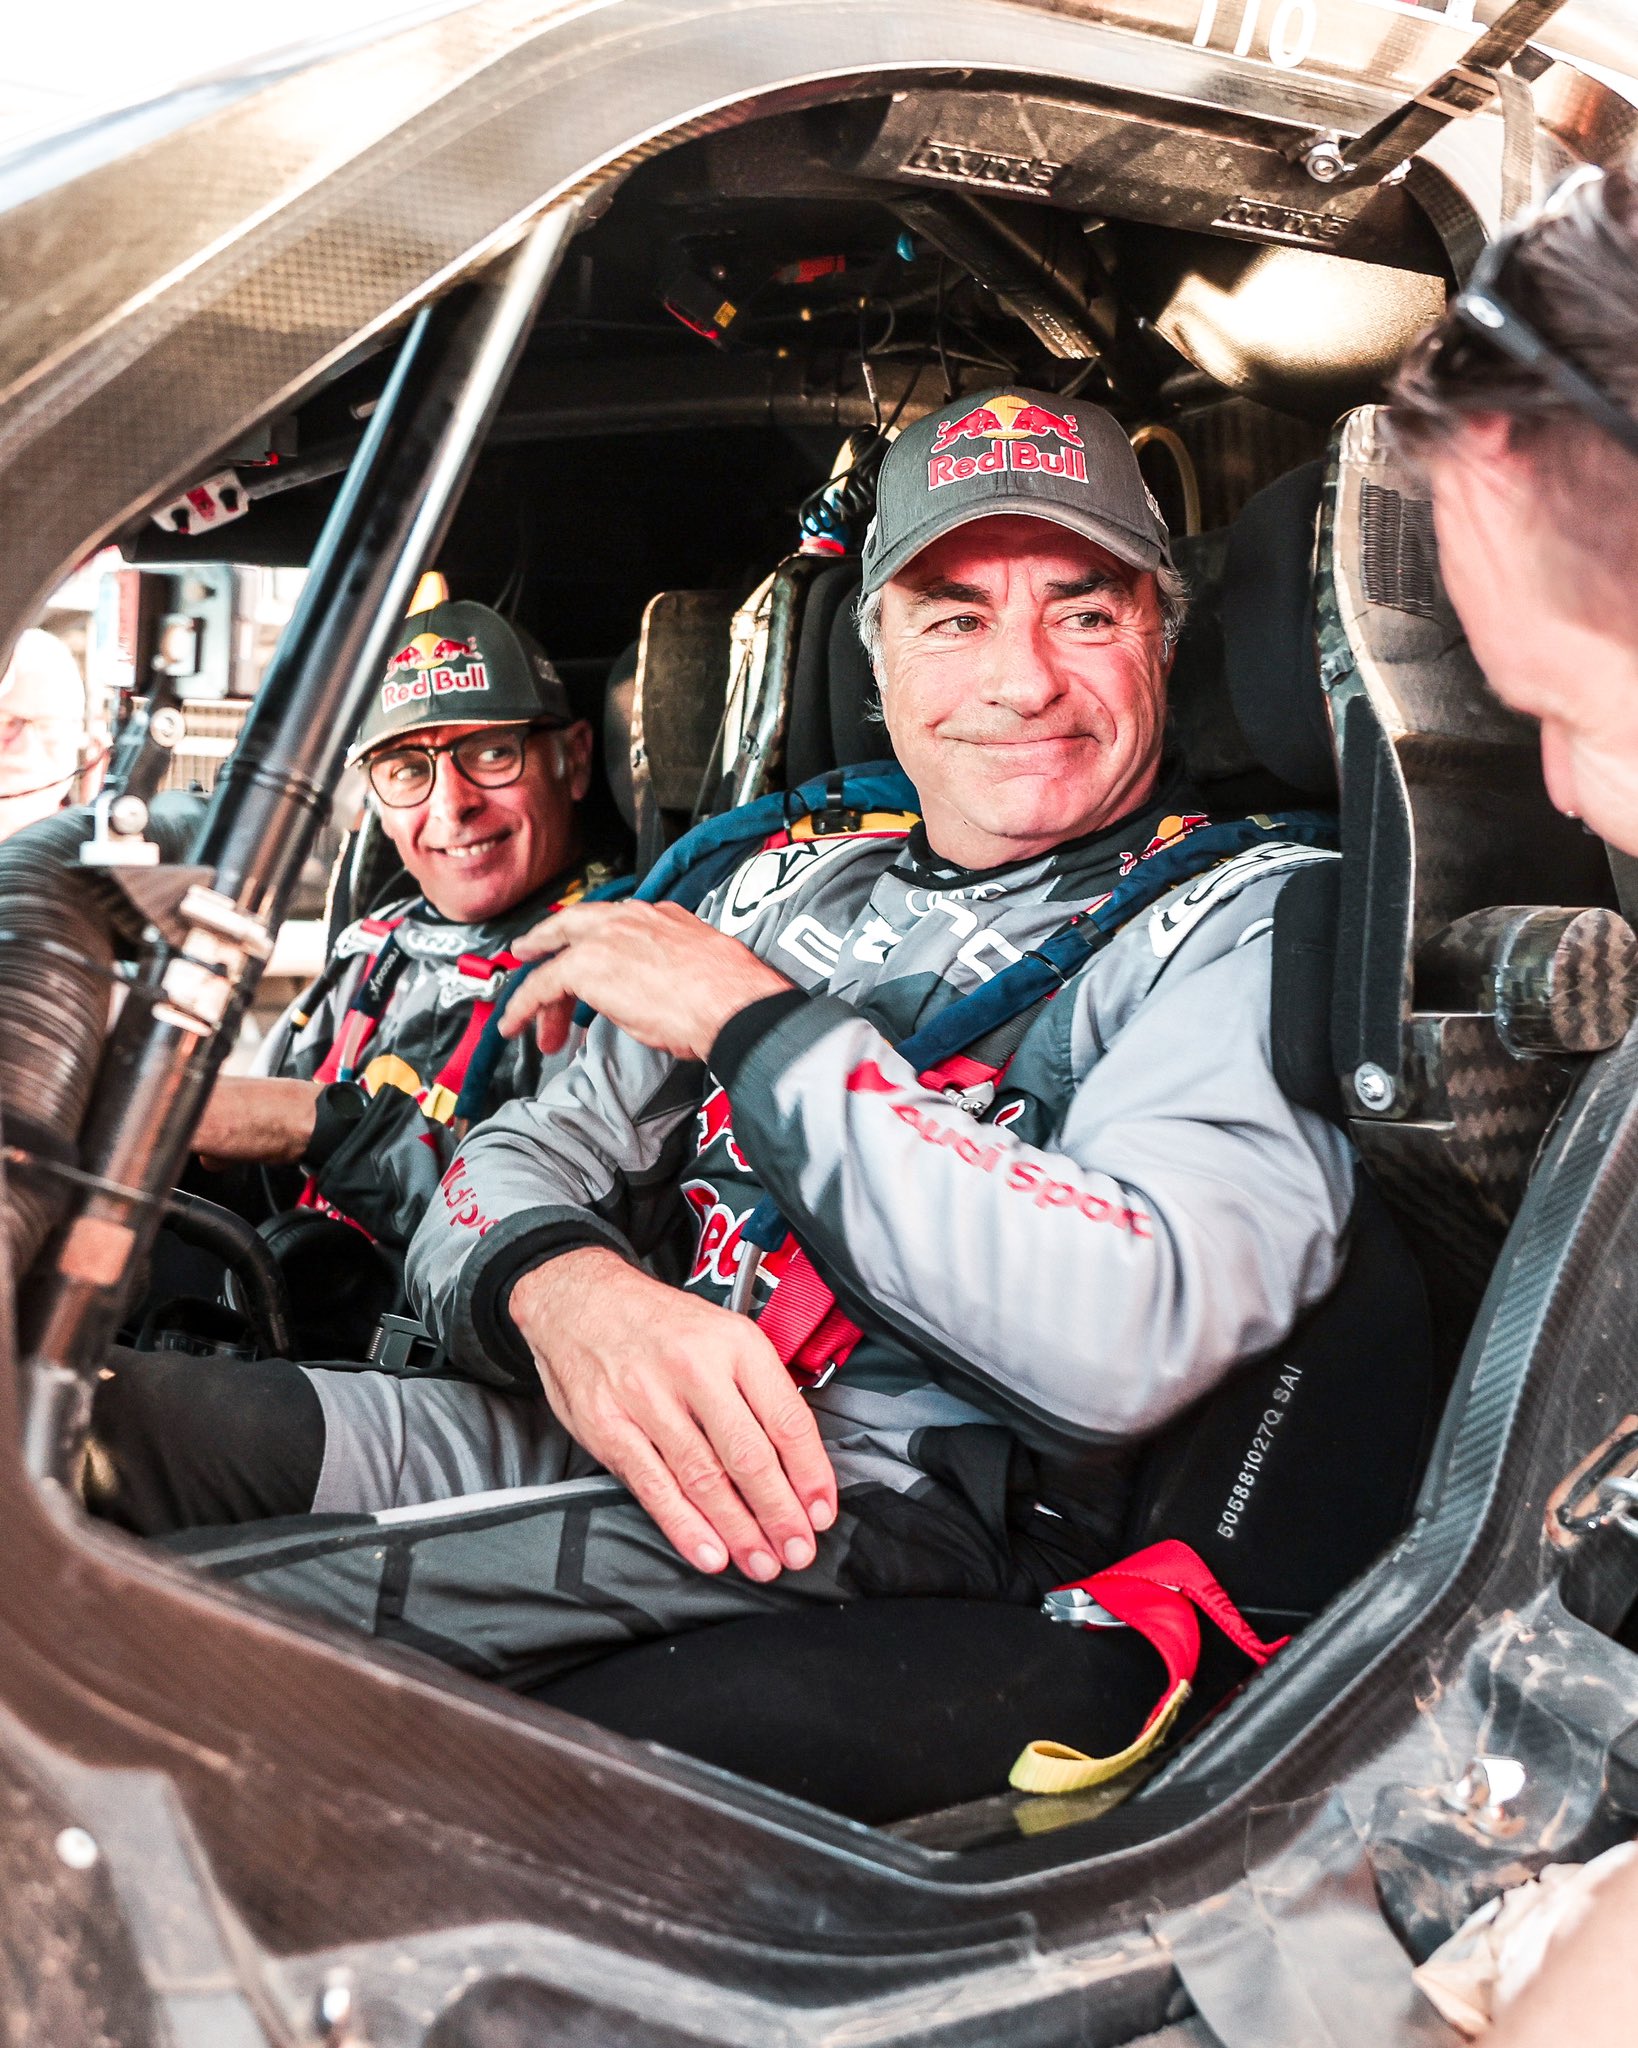 Carlos Sainz sigue liderando, pero Sebastien Loeb está cerca. La lucha entre dos leyendas del rally se intensifica en el Dakar.